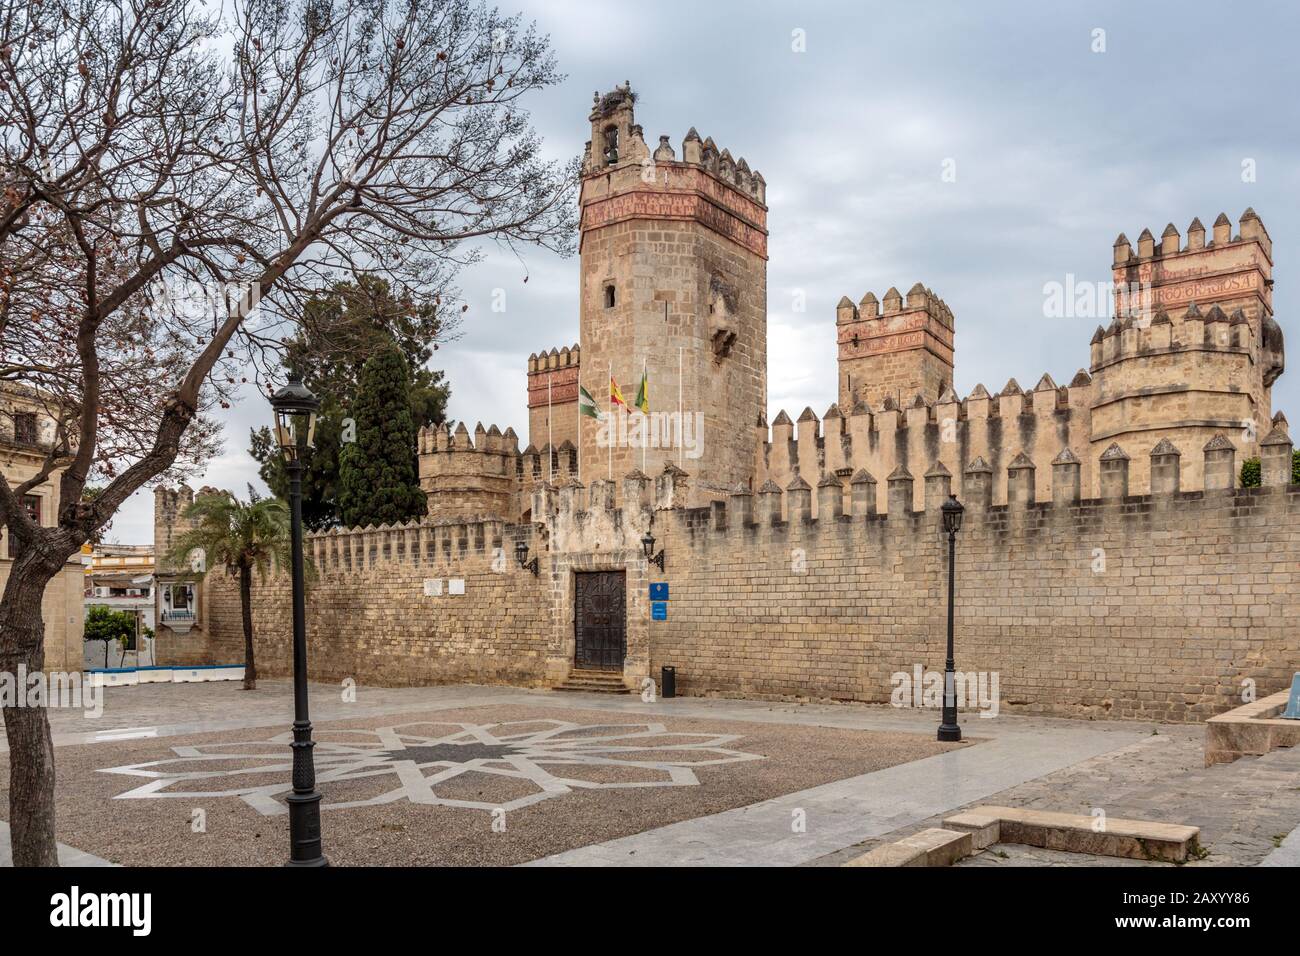 Die Burg von San Marcos ist eine mittelalterliche islamisch-gotische Struktur in El Puerto de Santa María, Provinz Cadiz, Spanien. Stockfoto